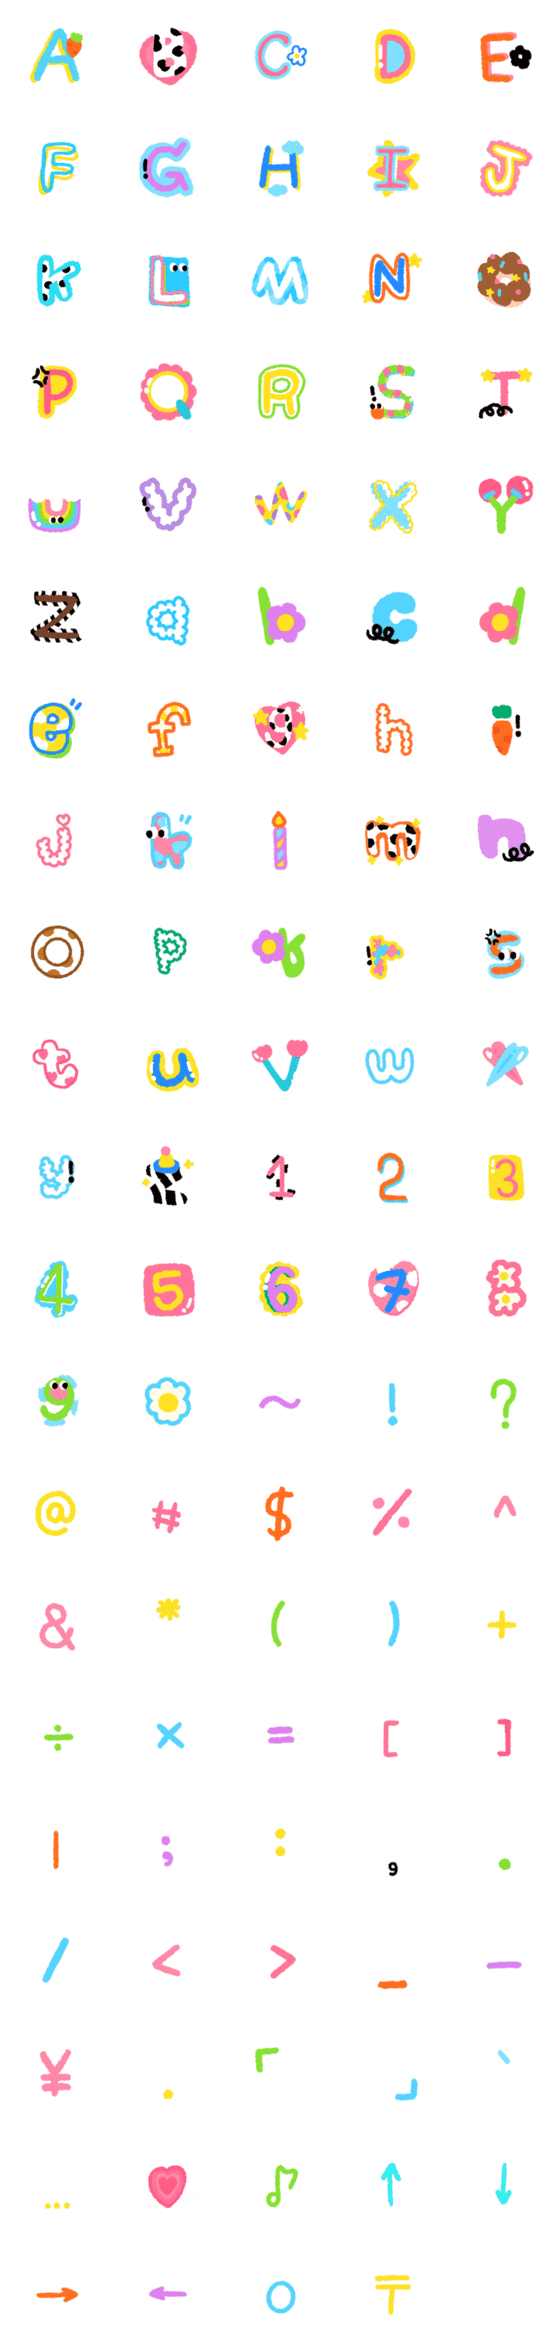 [LINE絵文字]Cute alphabet everyday - cutiepiebmineの画像一覧